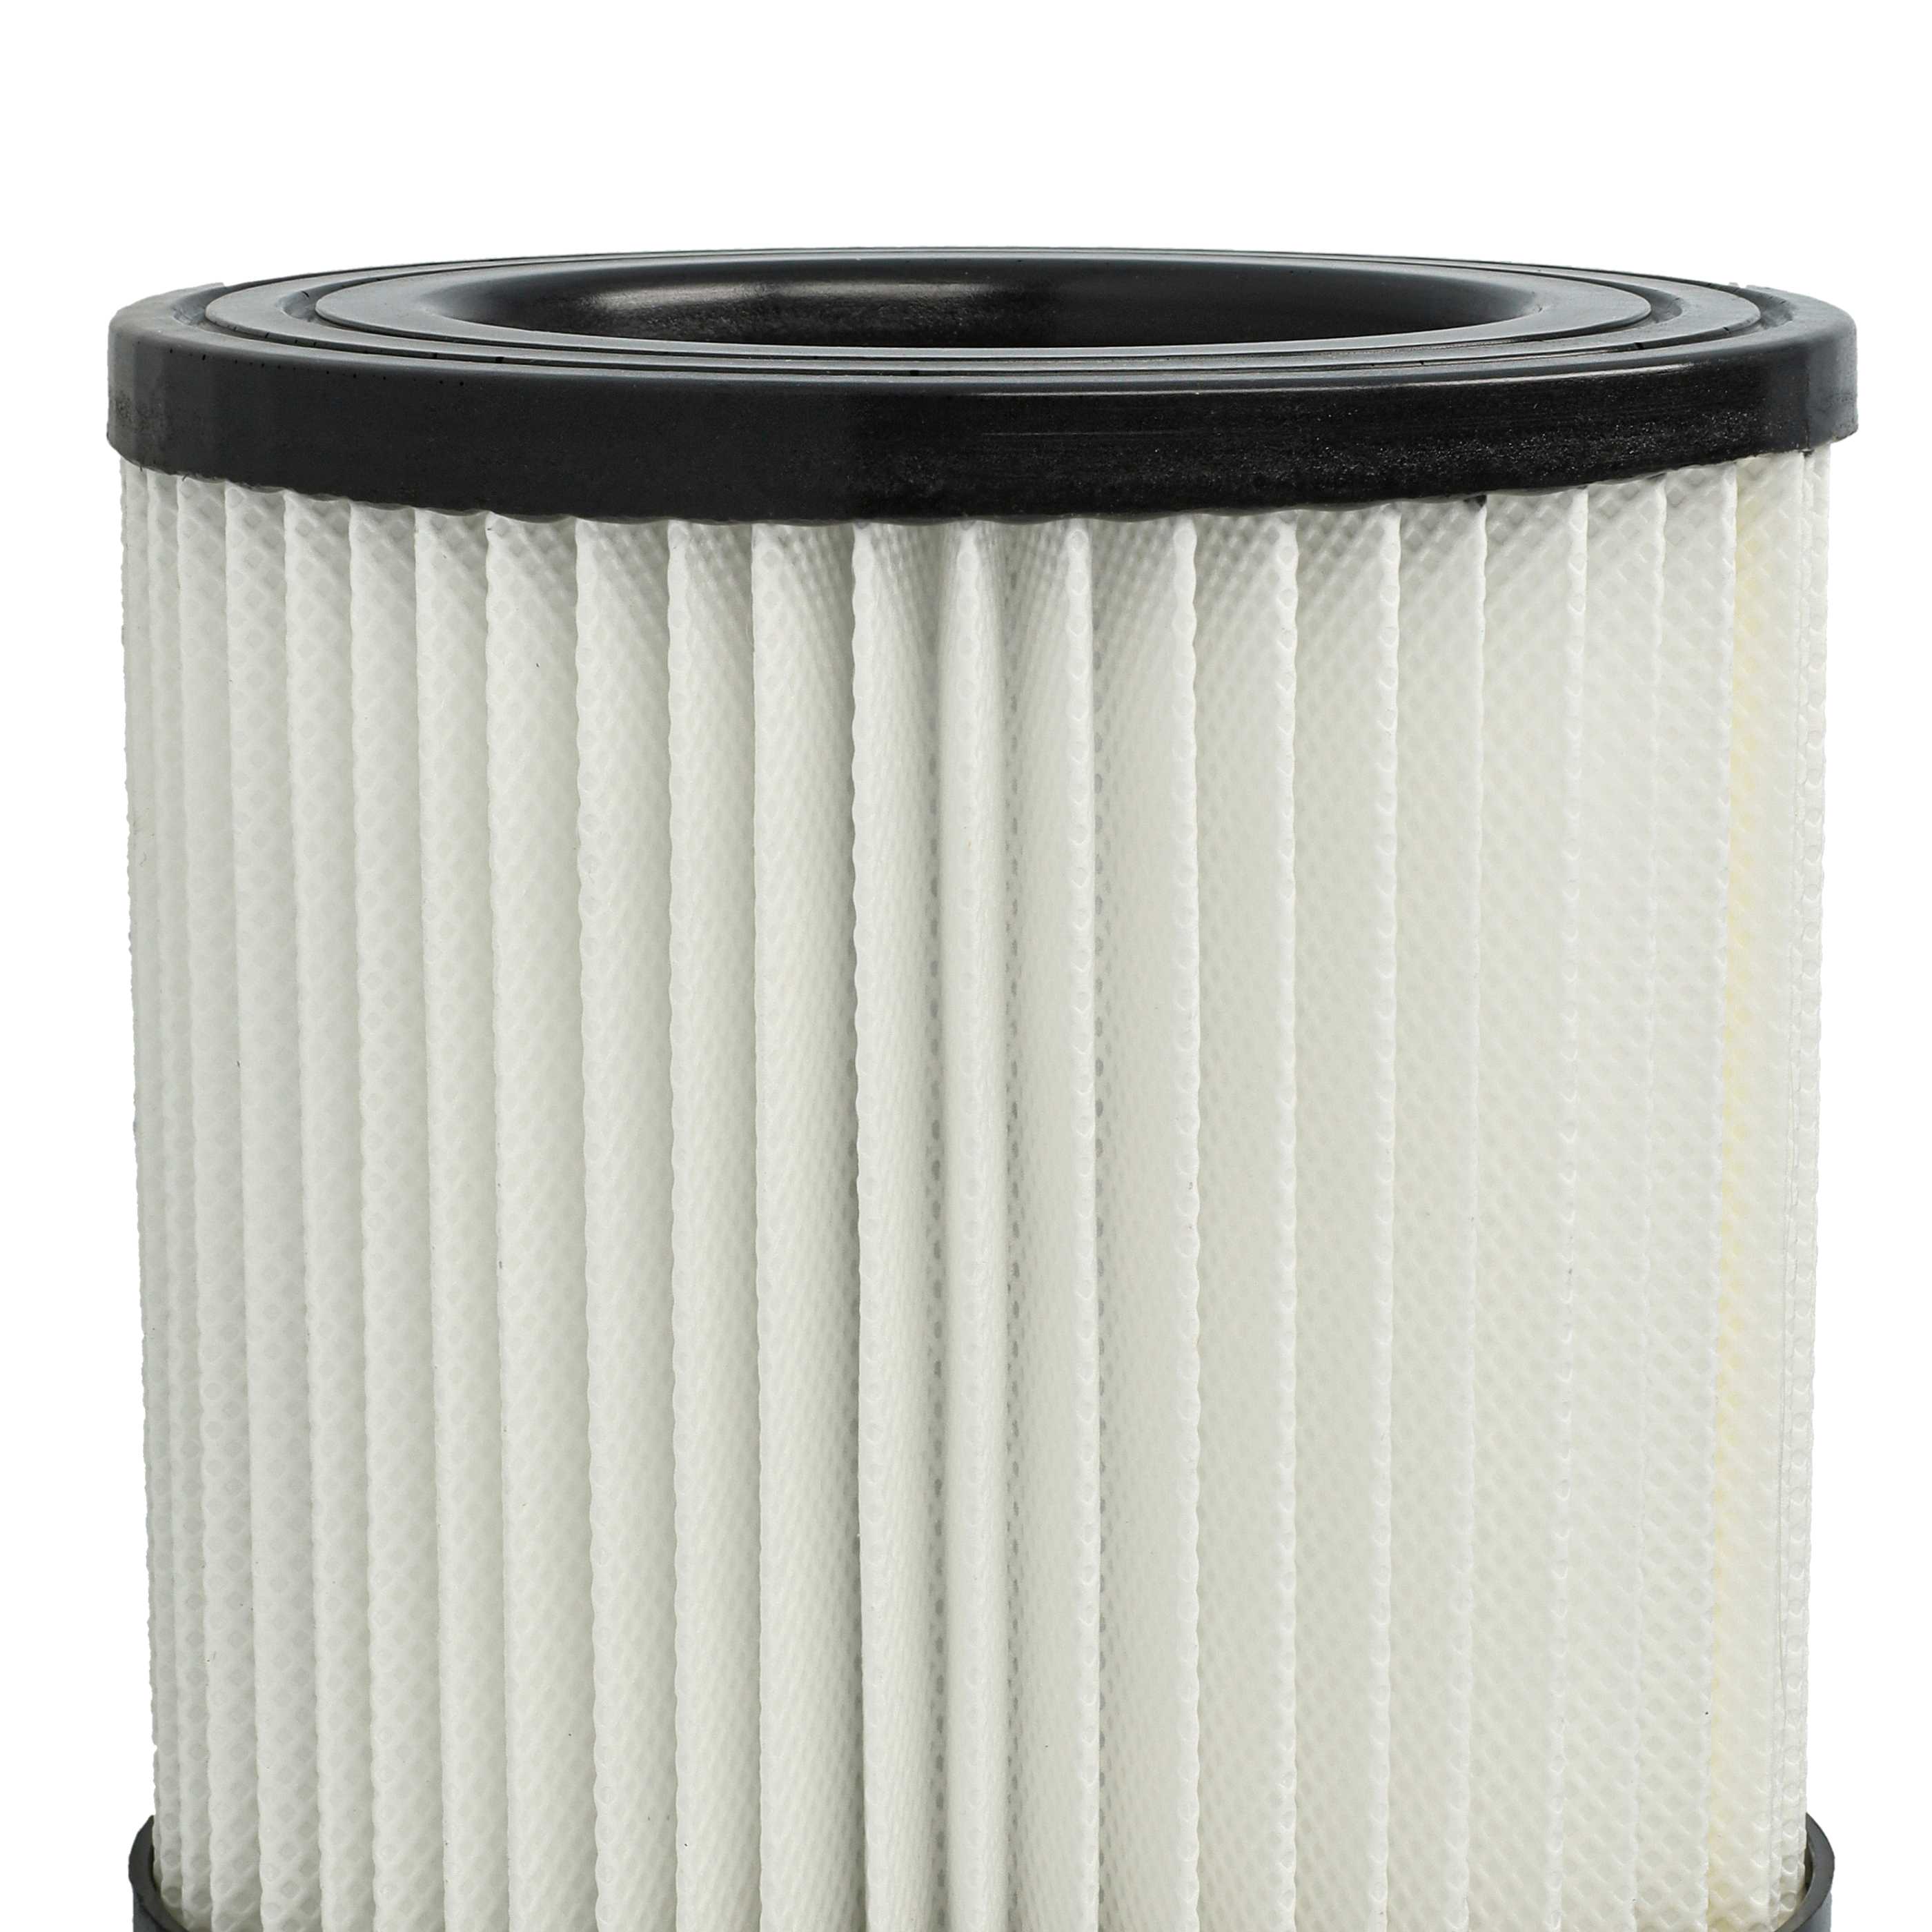 2x Filtres remplace Scheppach 7907702702 pour aspirateur - filtre HEPA